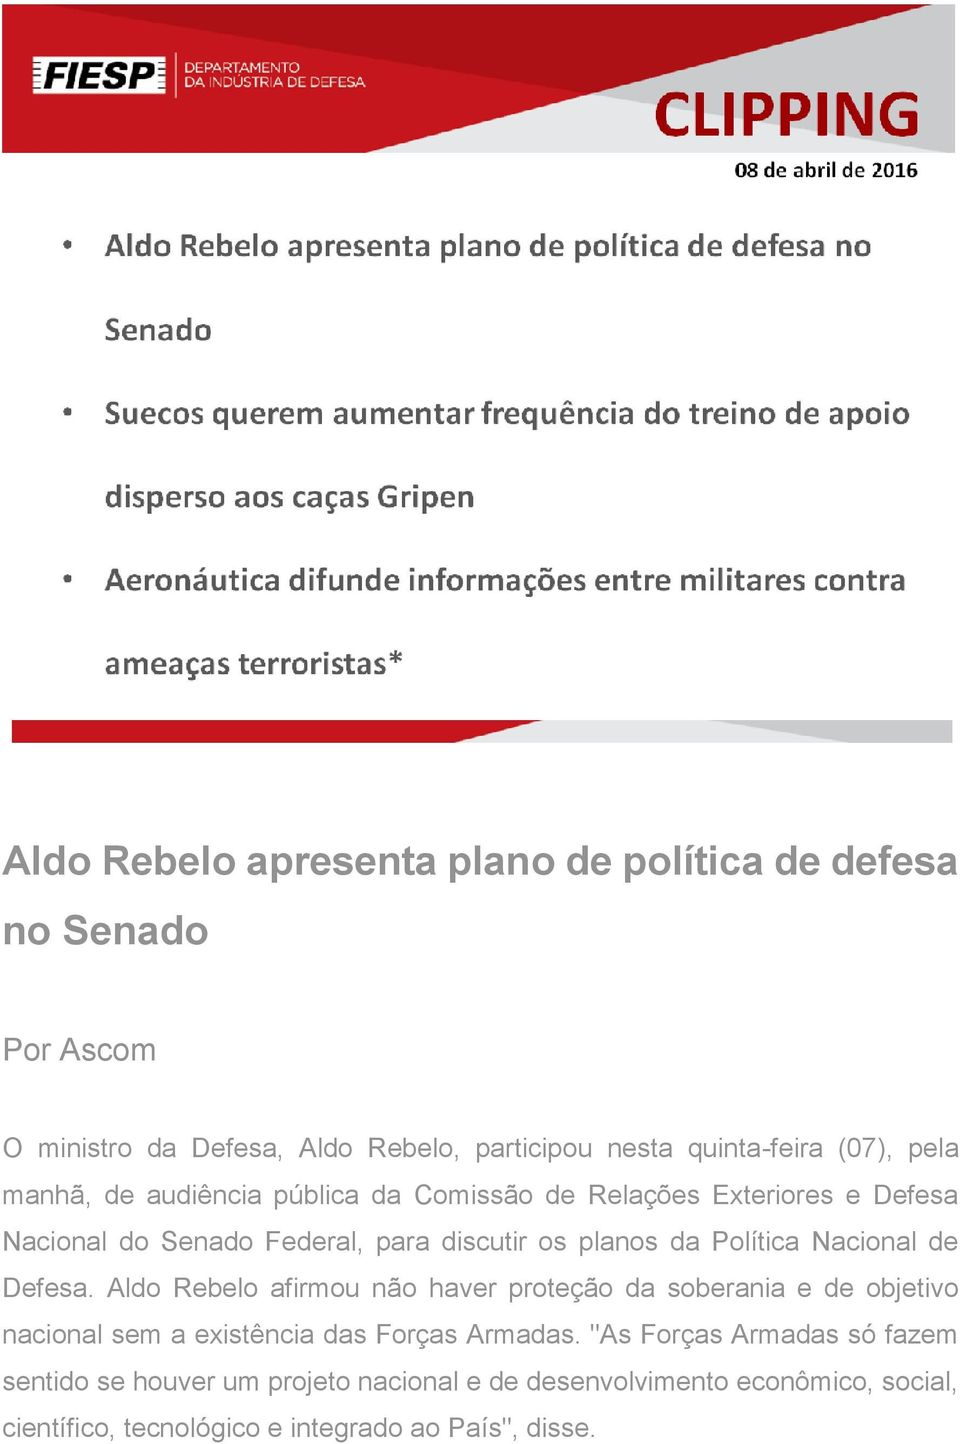 Nacional de Defesa. Aldo Rebelo afirmou não haver proteção da soberania e de objetivo nacional sem a existência das Forças Armadas.